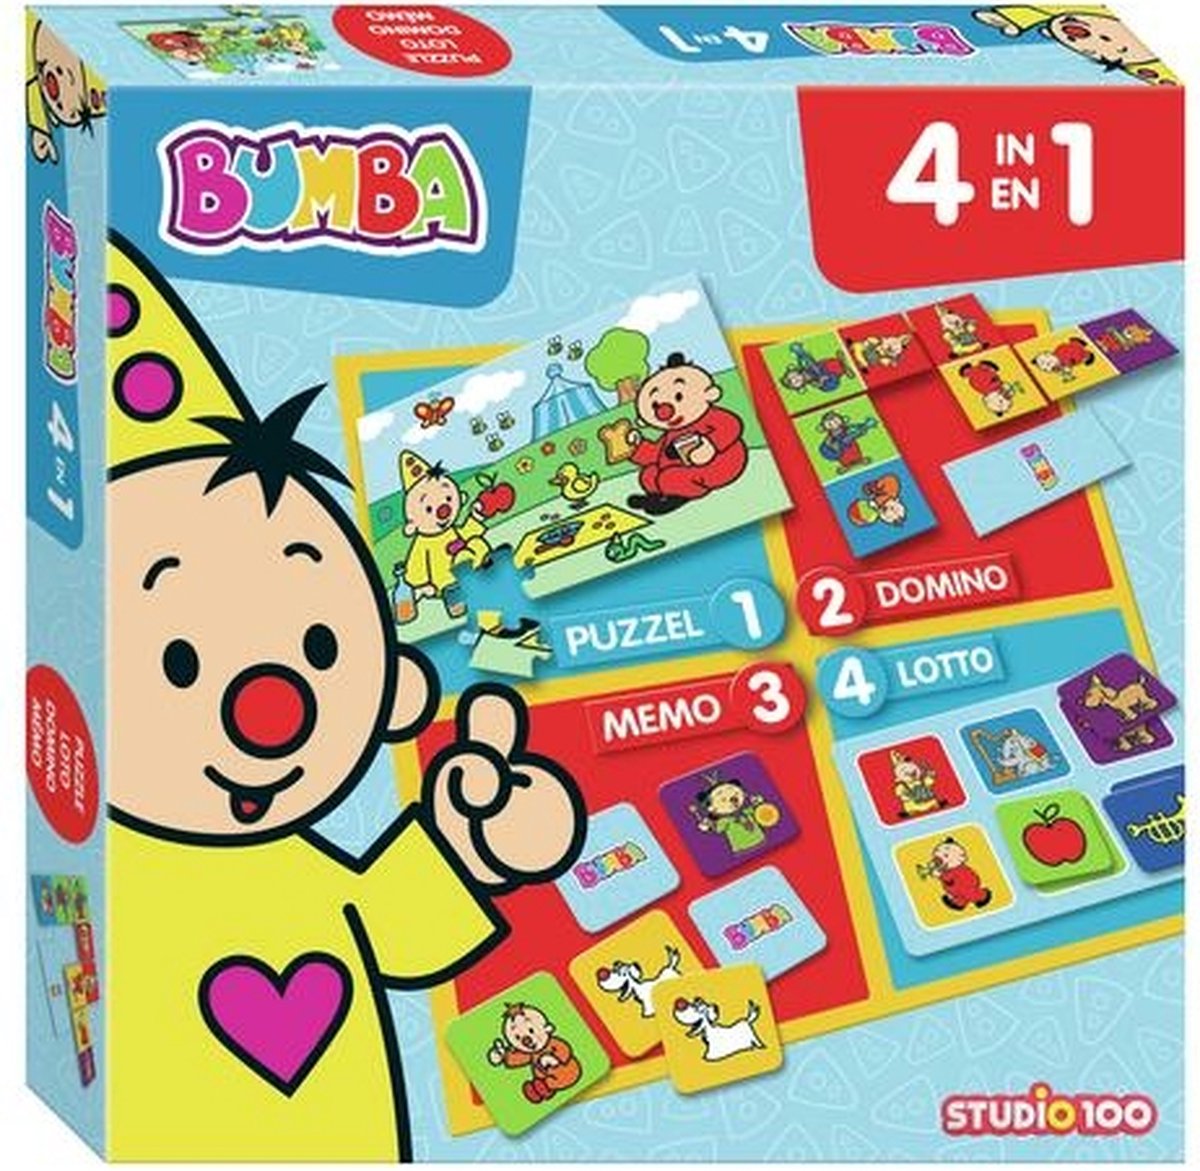 Bumba bordspel - 4 in 1 - puzzel, lotto, domino en memo - Bumba